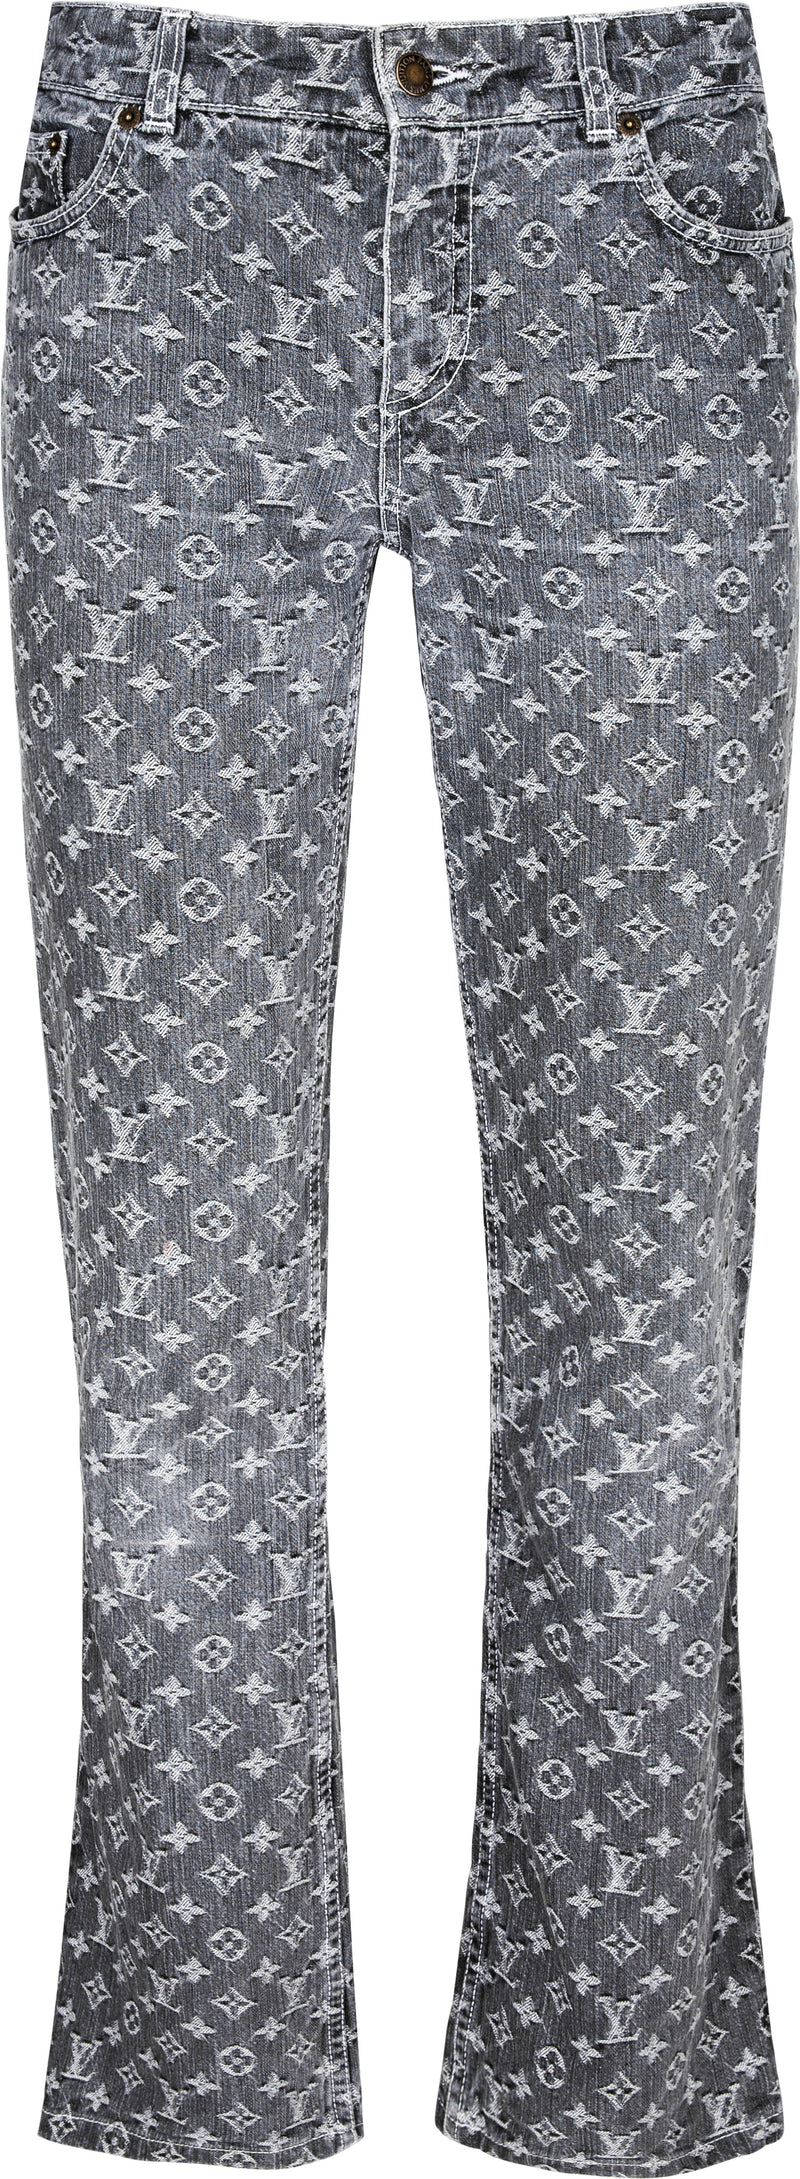 Louis Vuitton Monogram Printed Denim Pants Indigo. Size 33